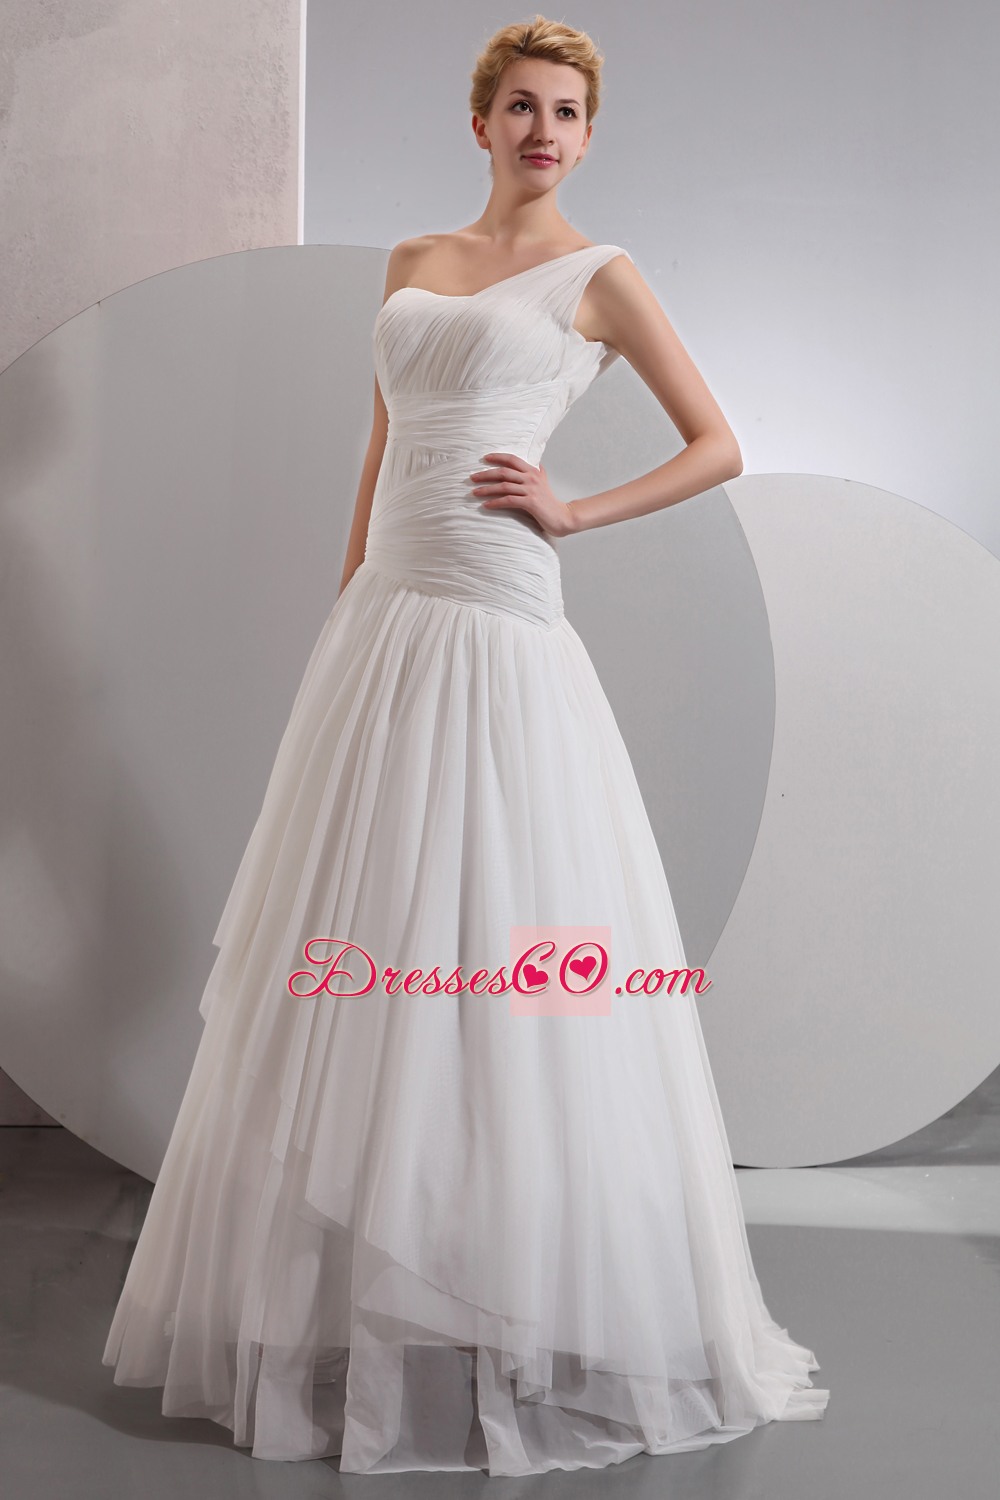 Beautiful A-line One Shoulder Long Chiffon Wedding Dress